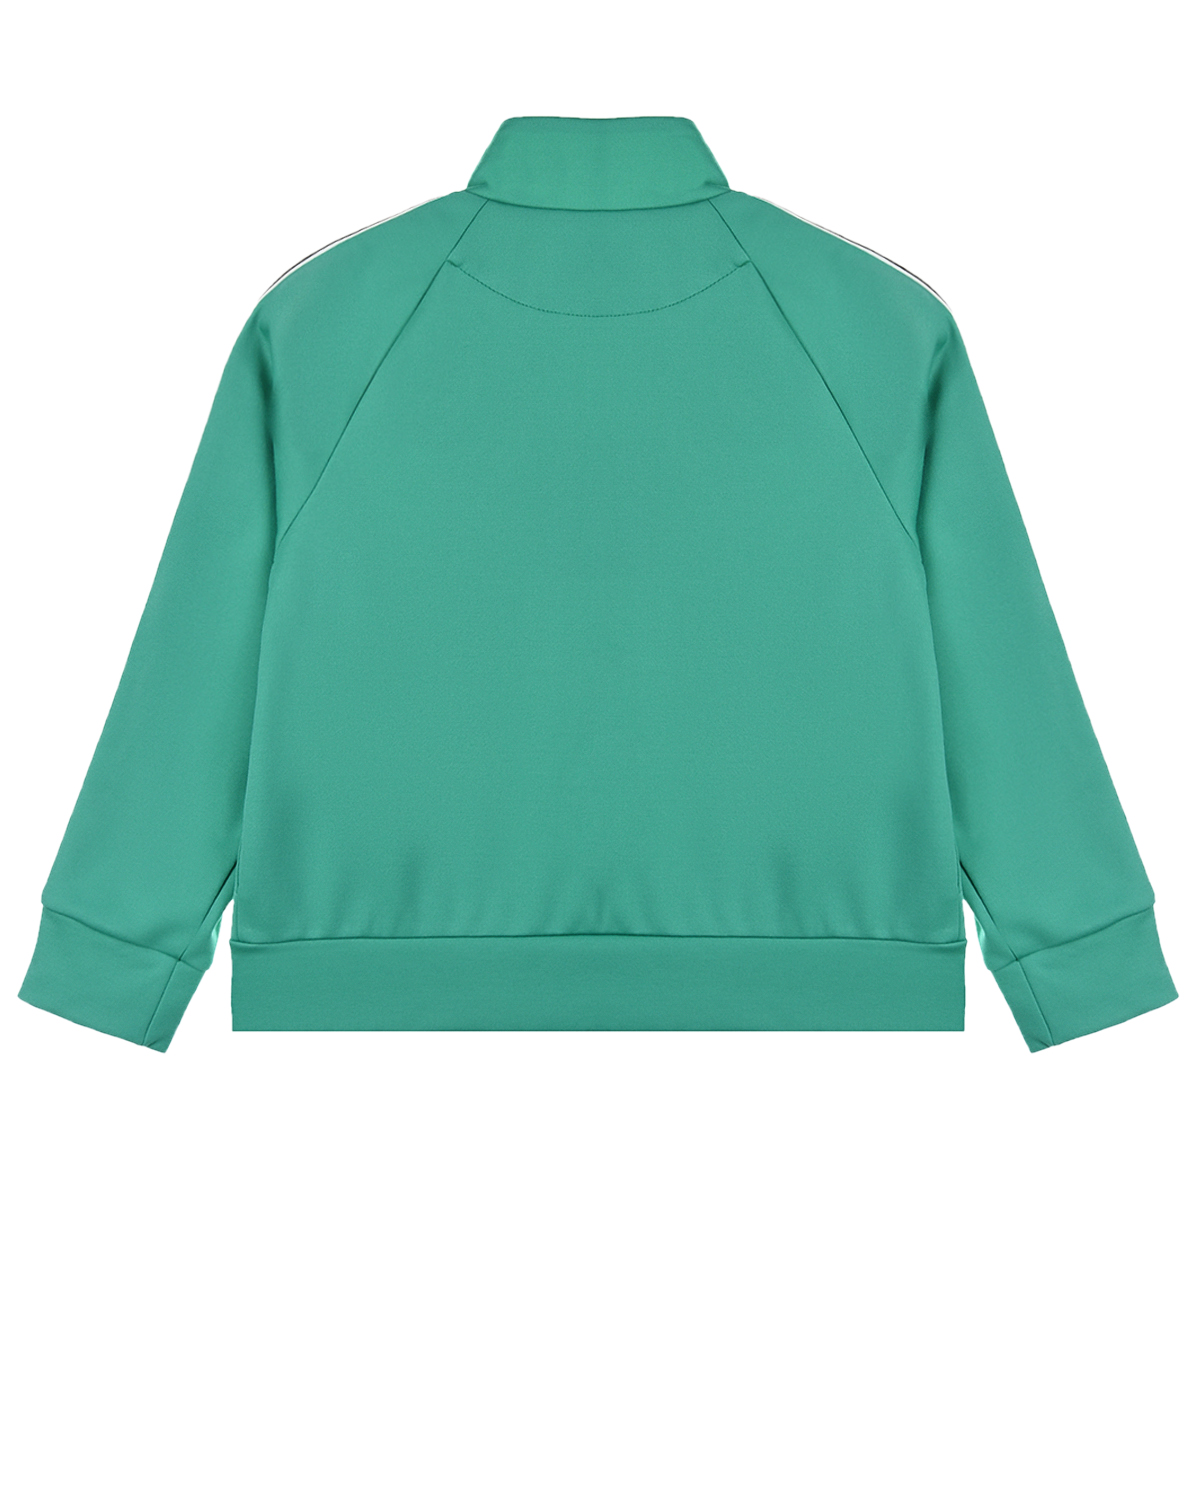 Зеленая спортивная куртка с брендированными лампасами Fendi детская, размер 128, цвет зеленый - фото 2